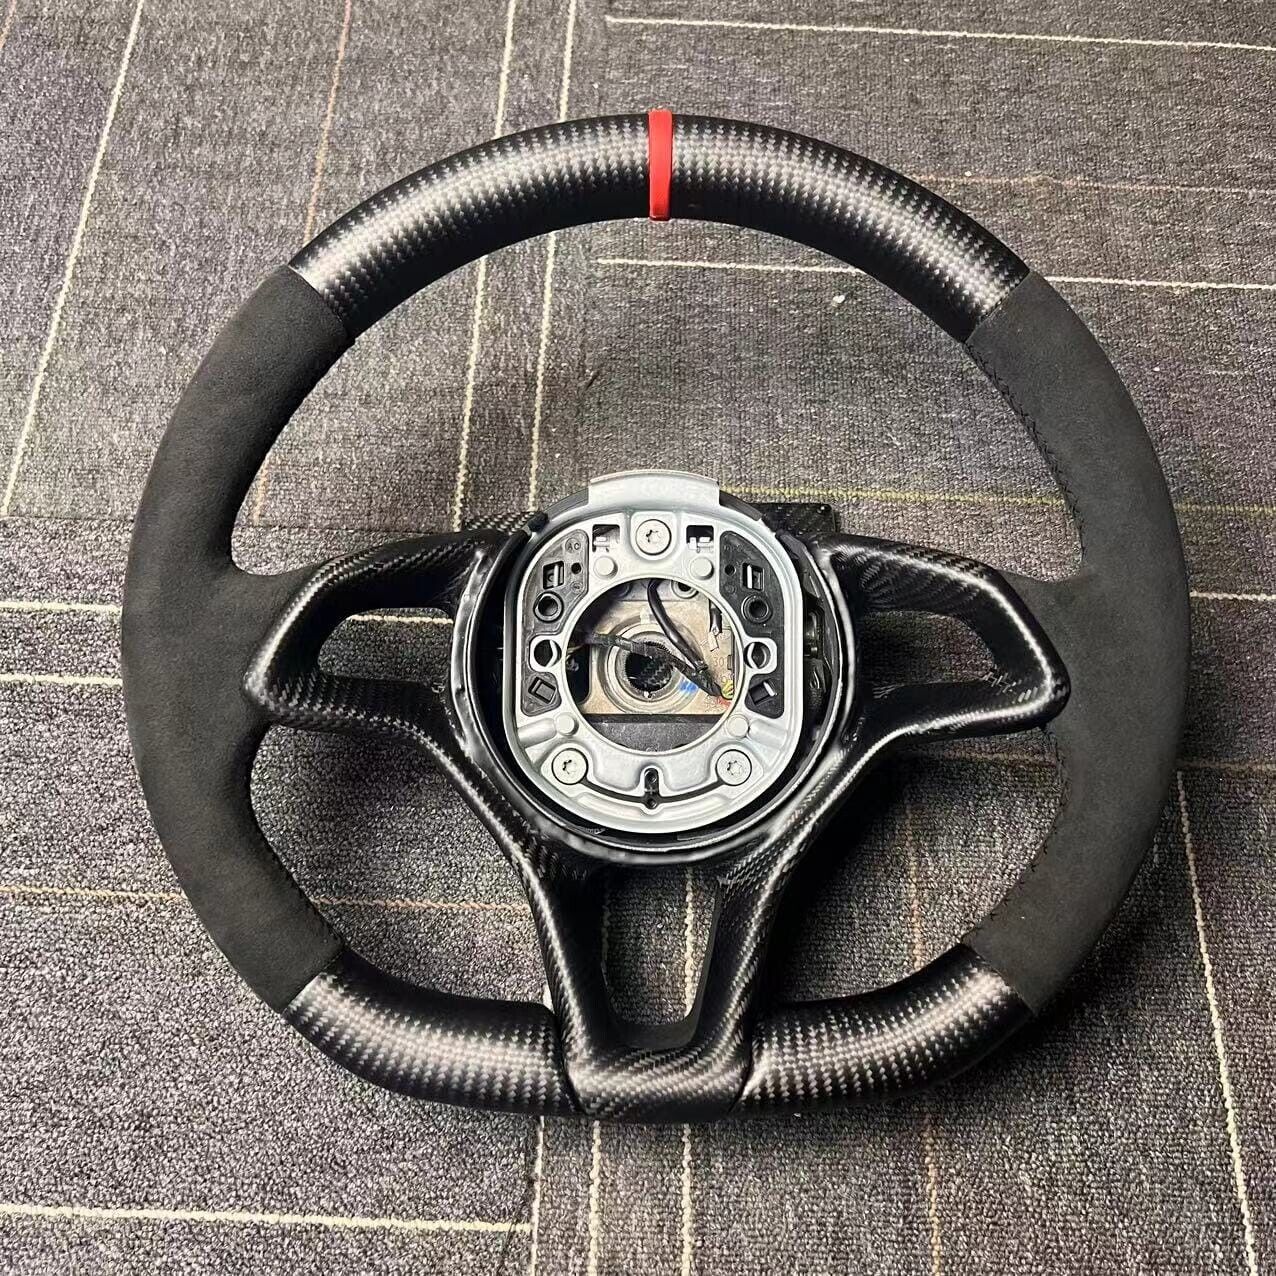 Mclaren 570s Carbon Fiber / Alcantera Steering Wheel